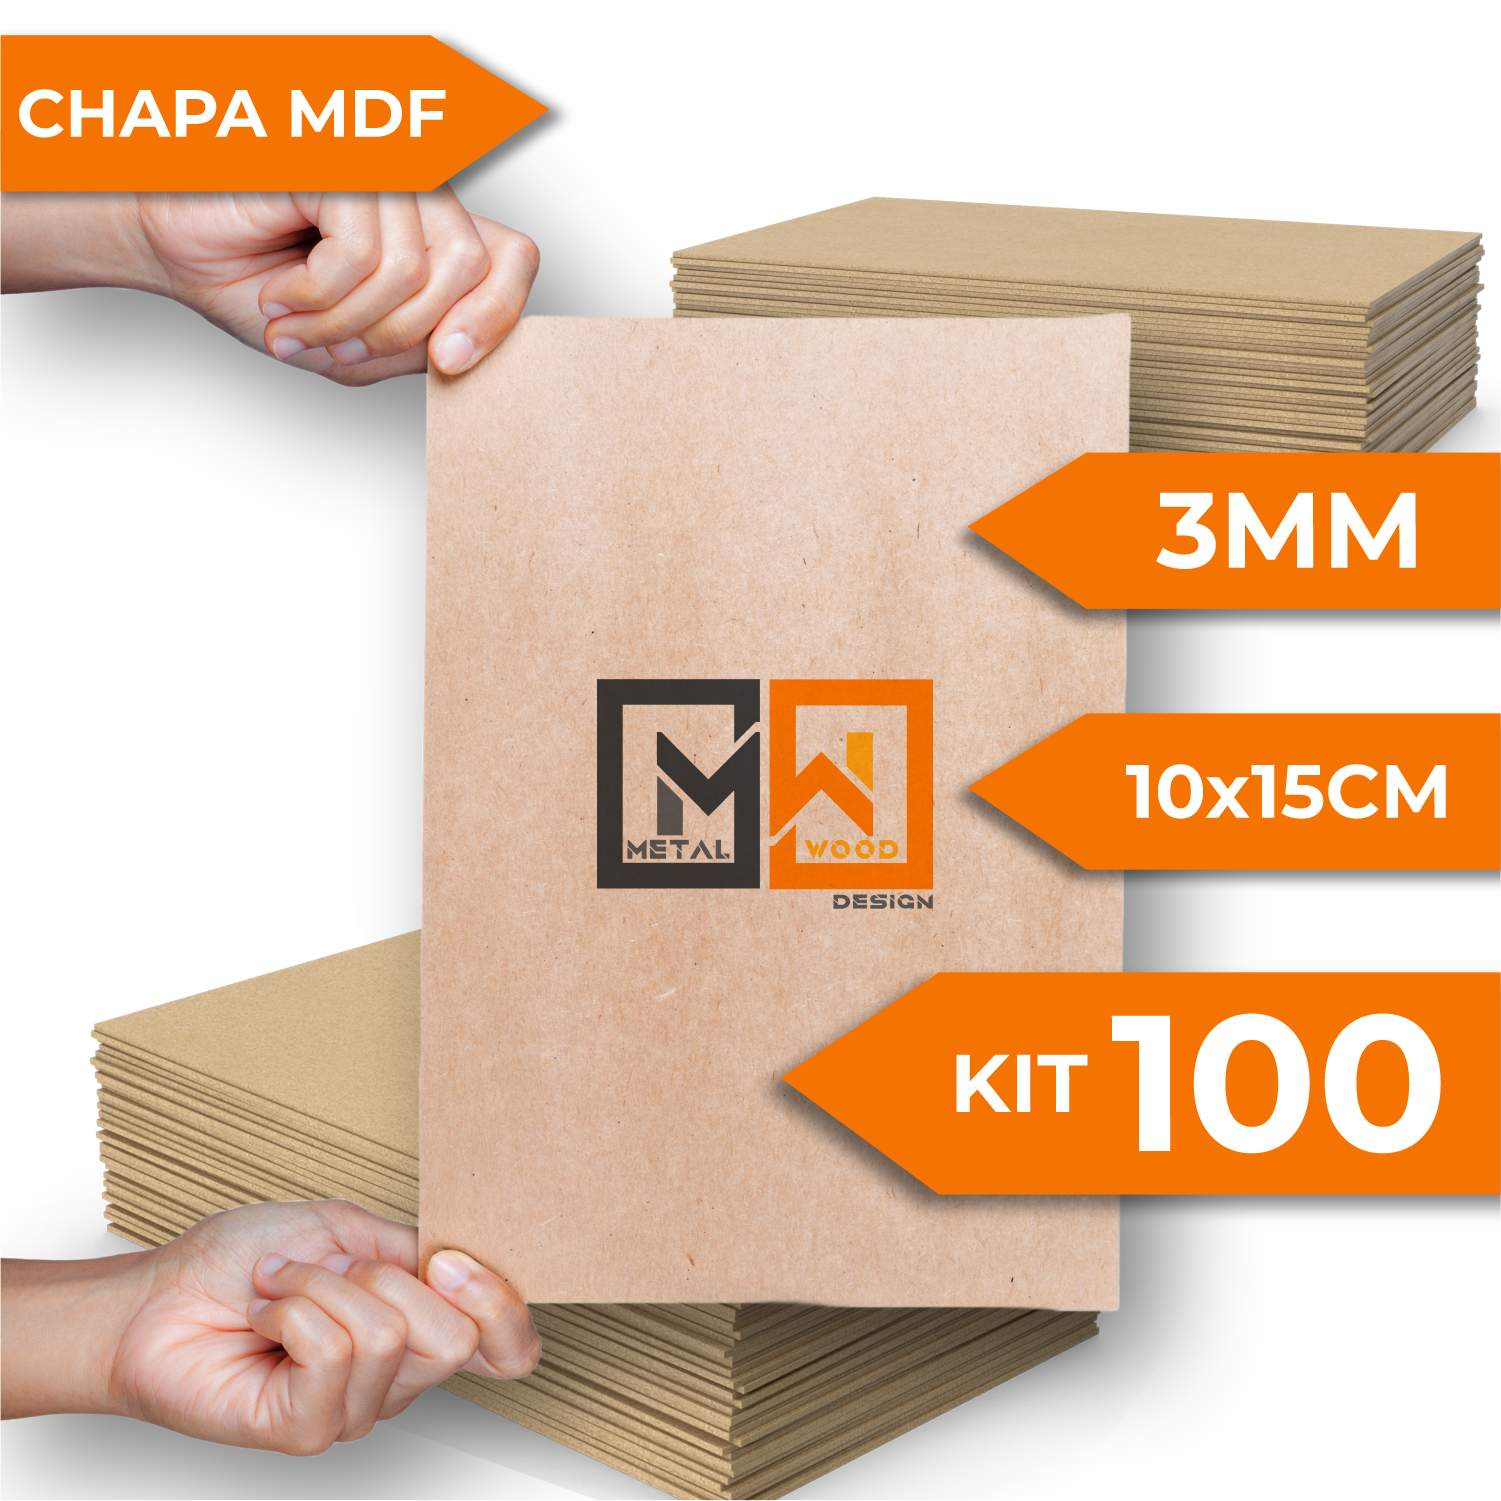 Chapa Mdf Cru 10x15 Kit 100 3mm Placas Artesanato Decoração - 2